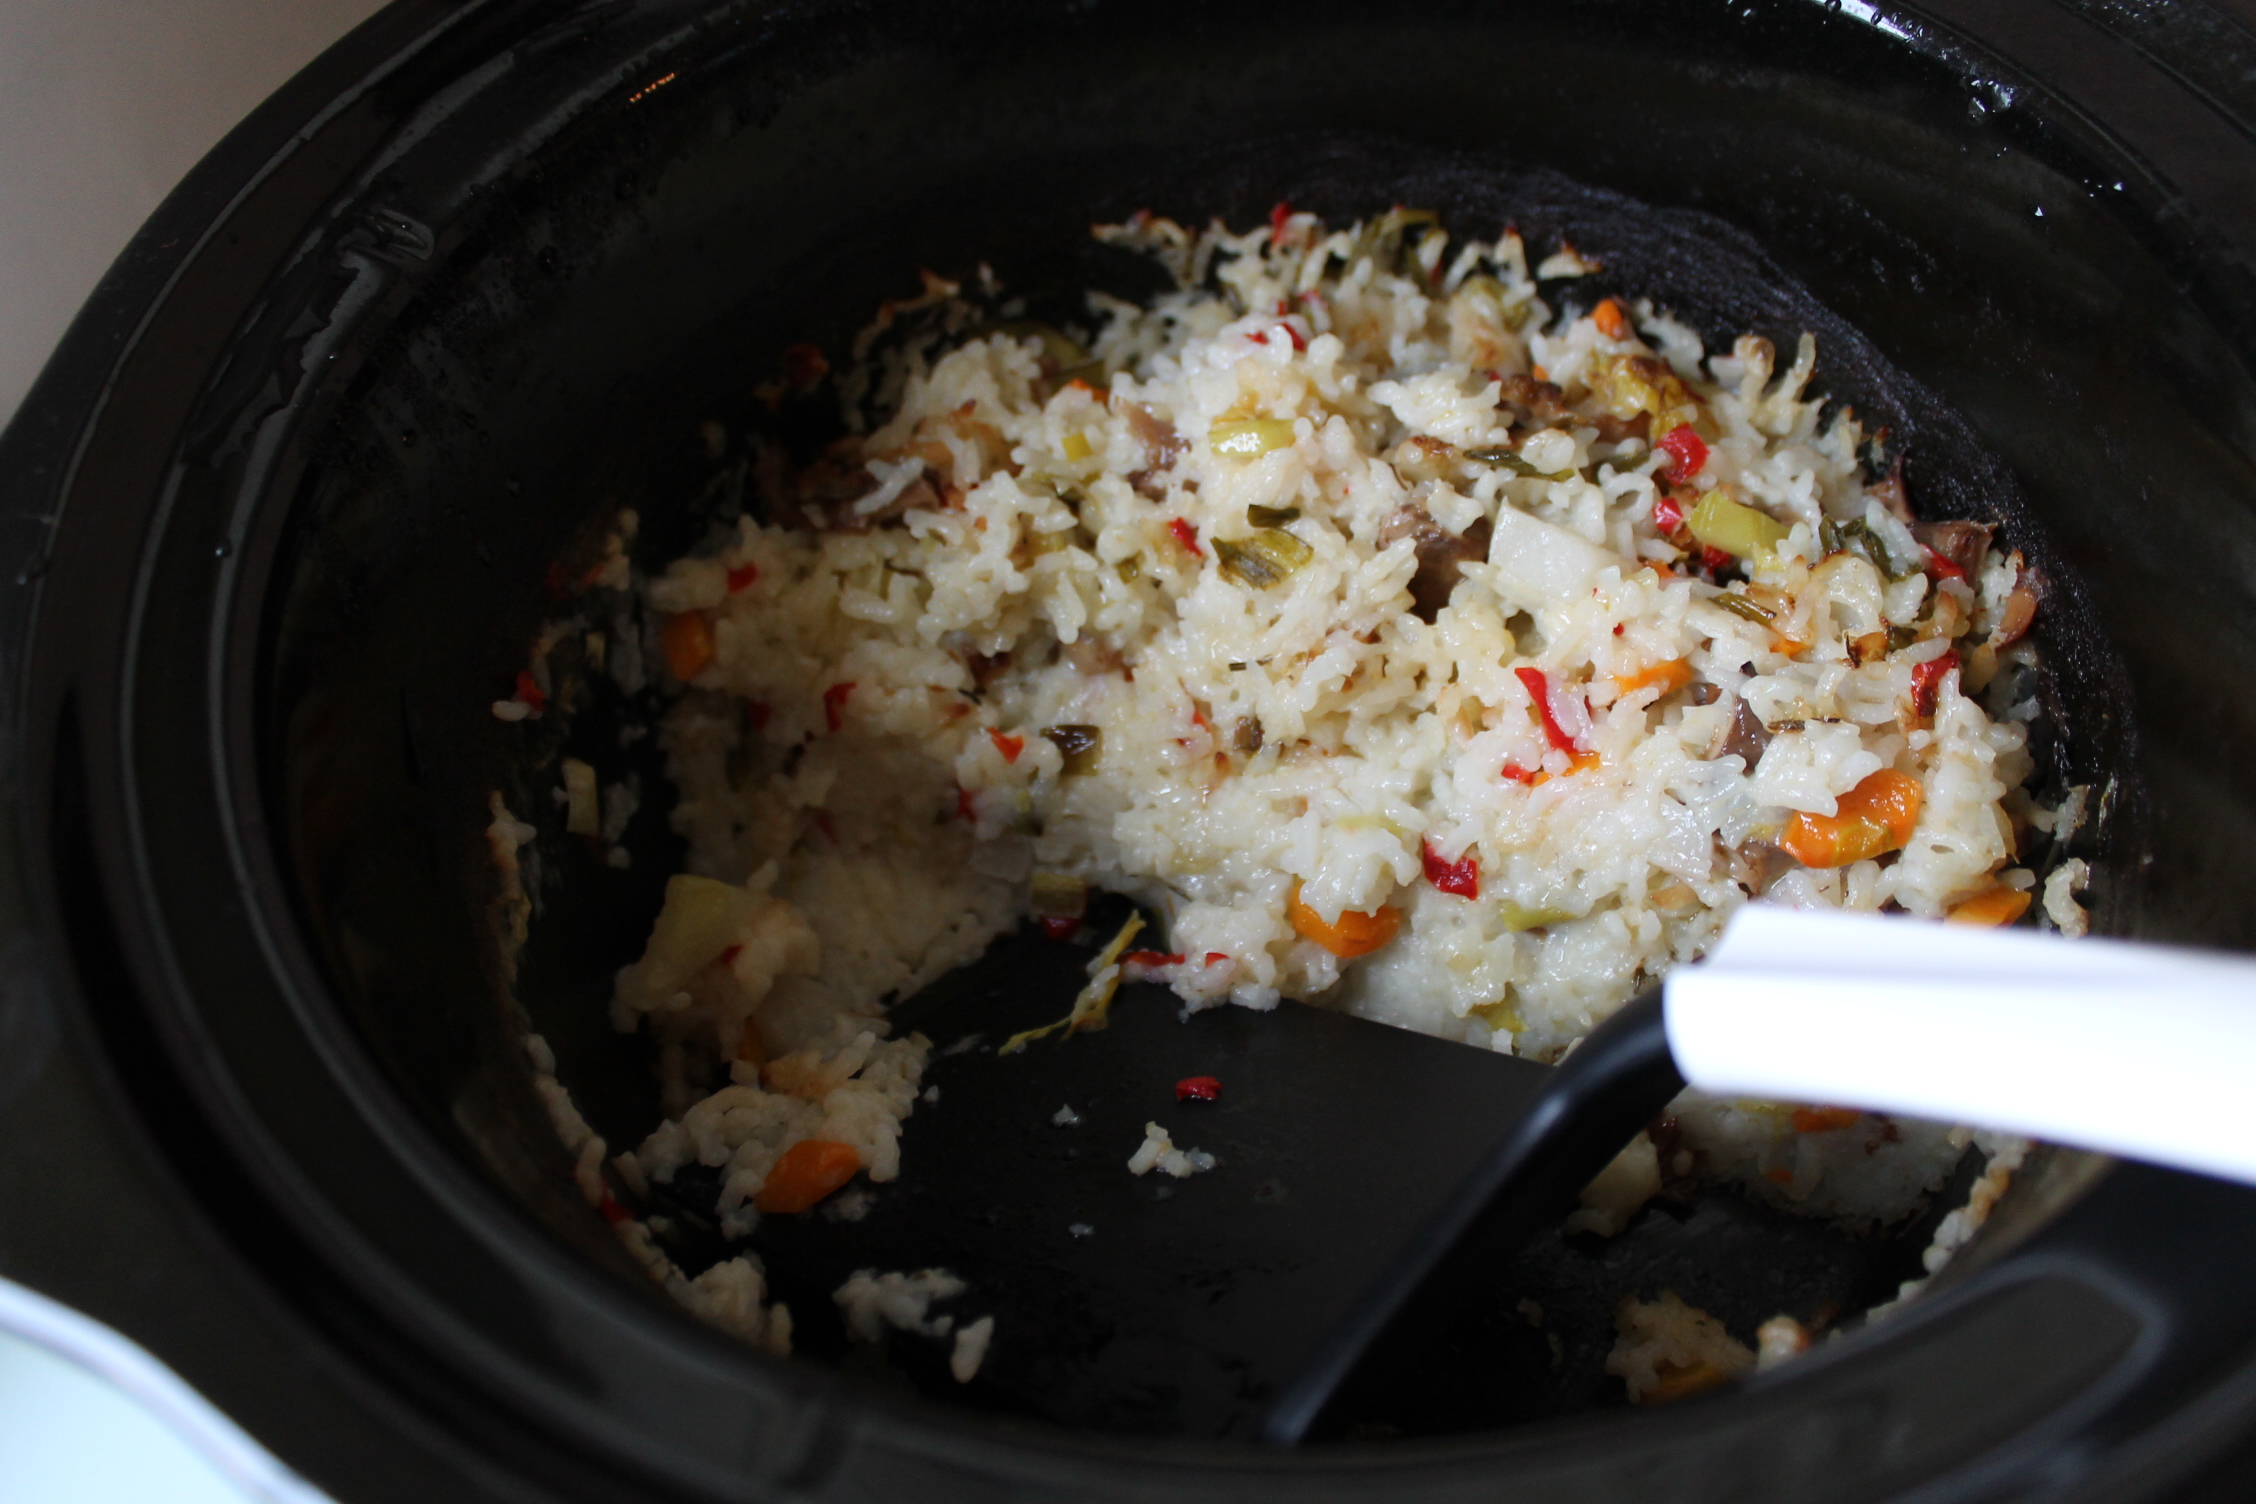 Orez cu legume la slow cooker Crock-Pot 4,7 L